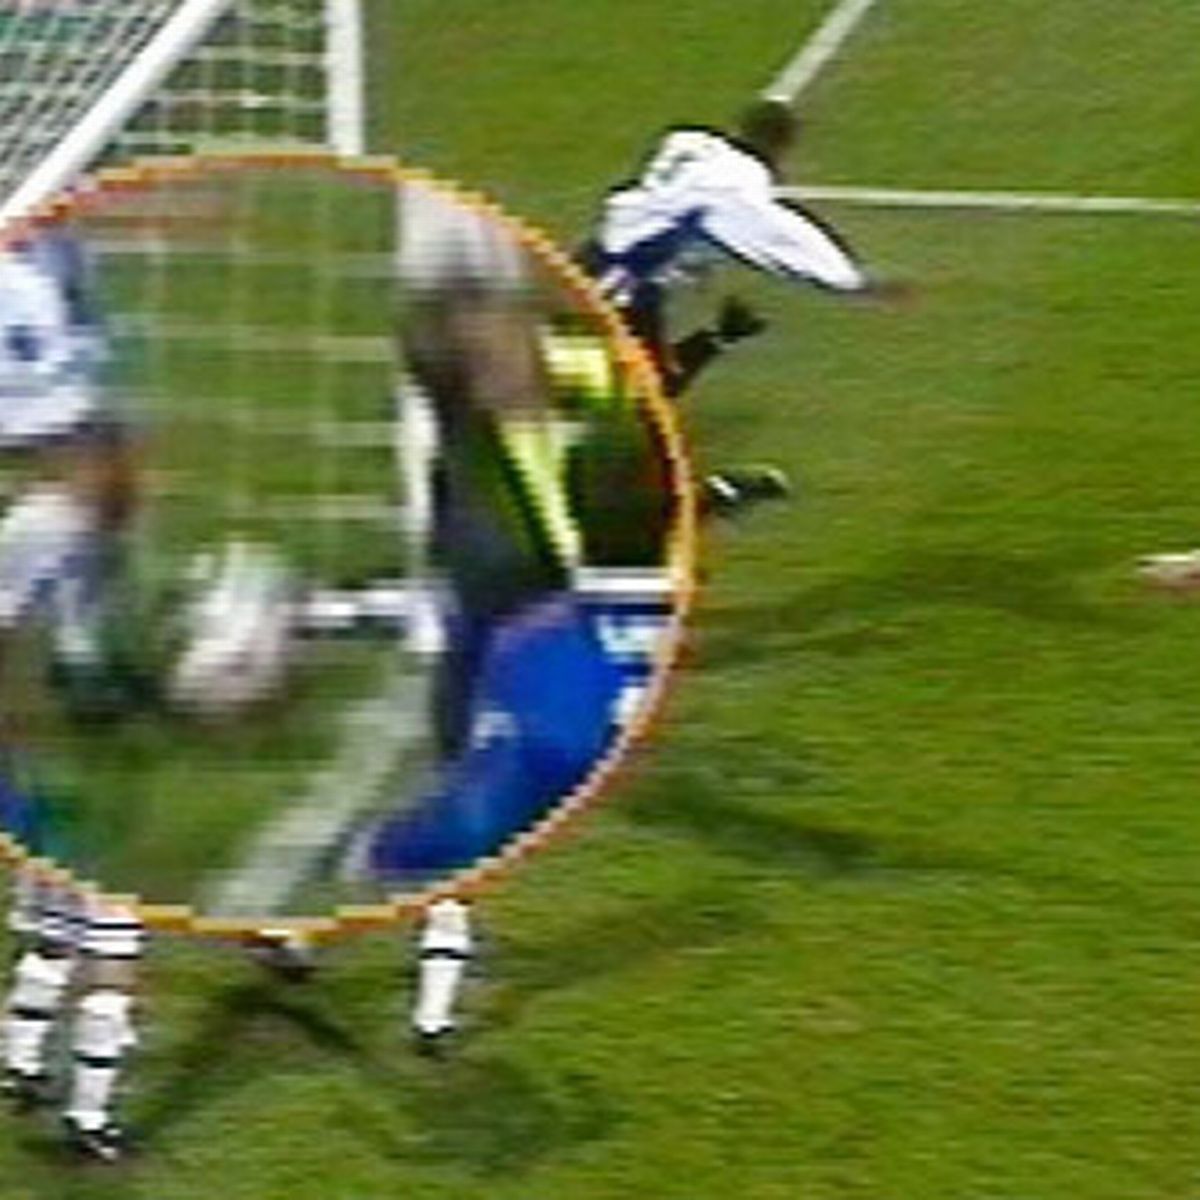 bolton-s-disallowed-goal-against-everton-in-1997-988737850.jpg